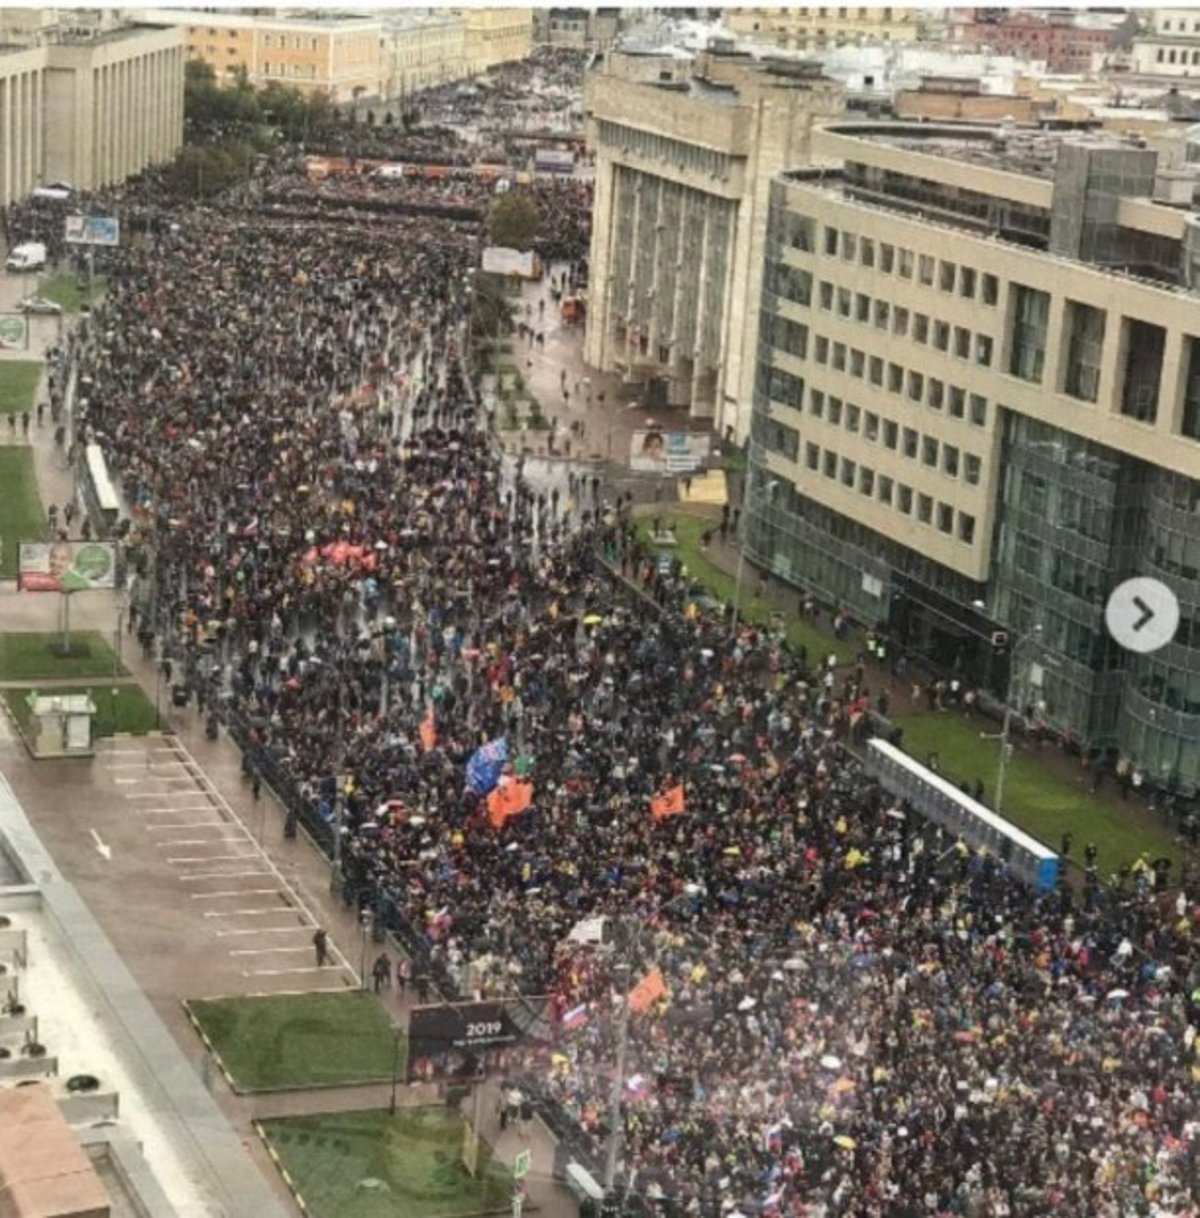 Досчитать до ста: эксперты рассказывают о завышении числа участников согласованного митинга в Москве